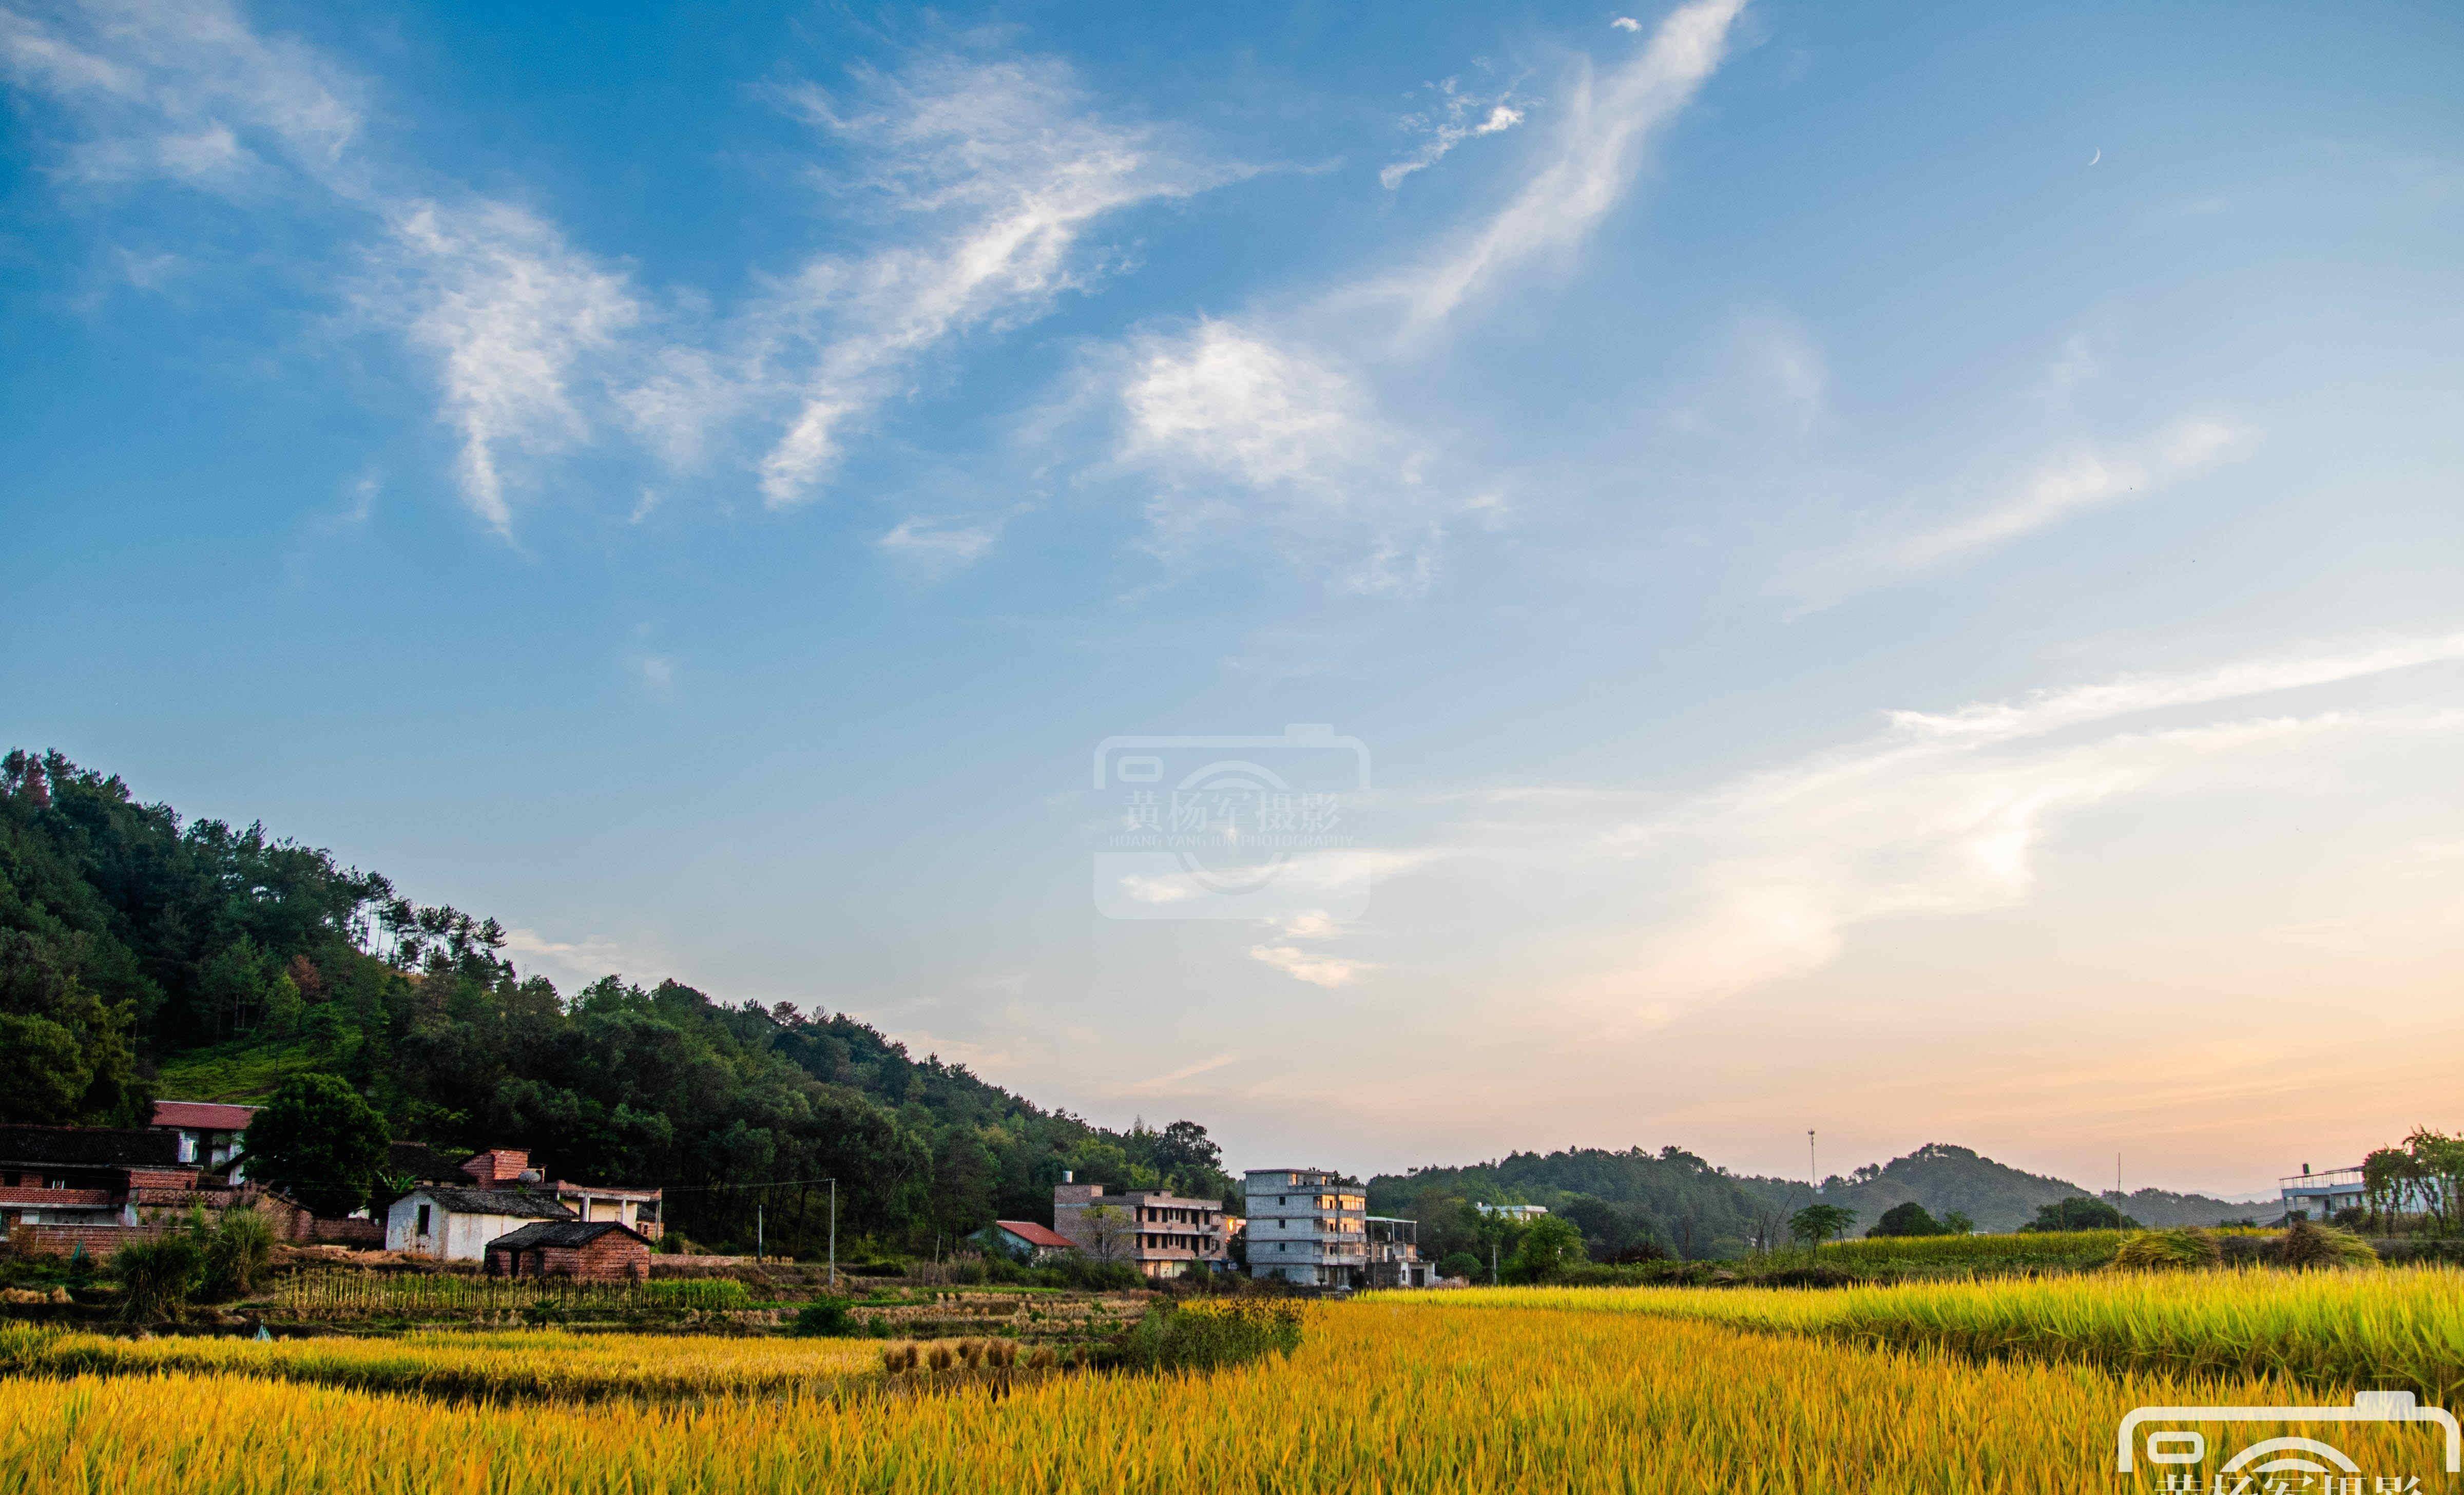 江西河田村的乡村秋色,稻浪金黄景色美如画,距于都城仅11公里